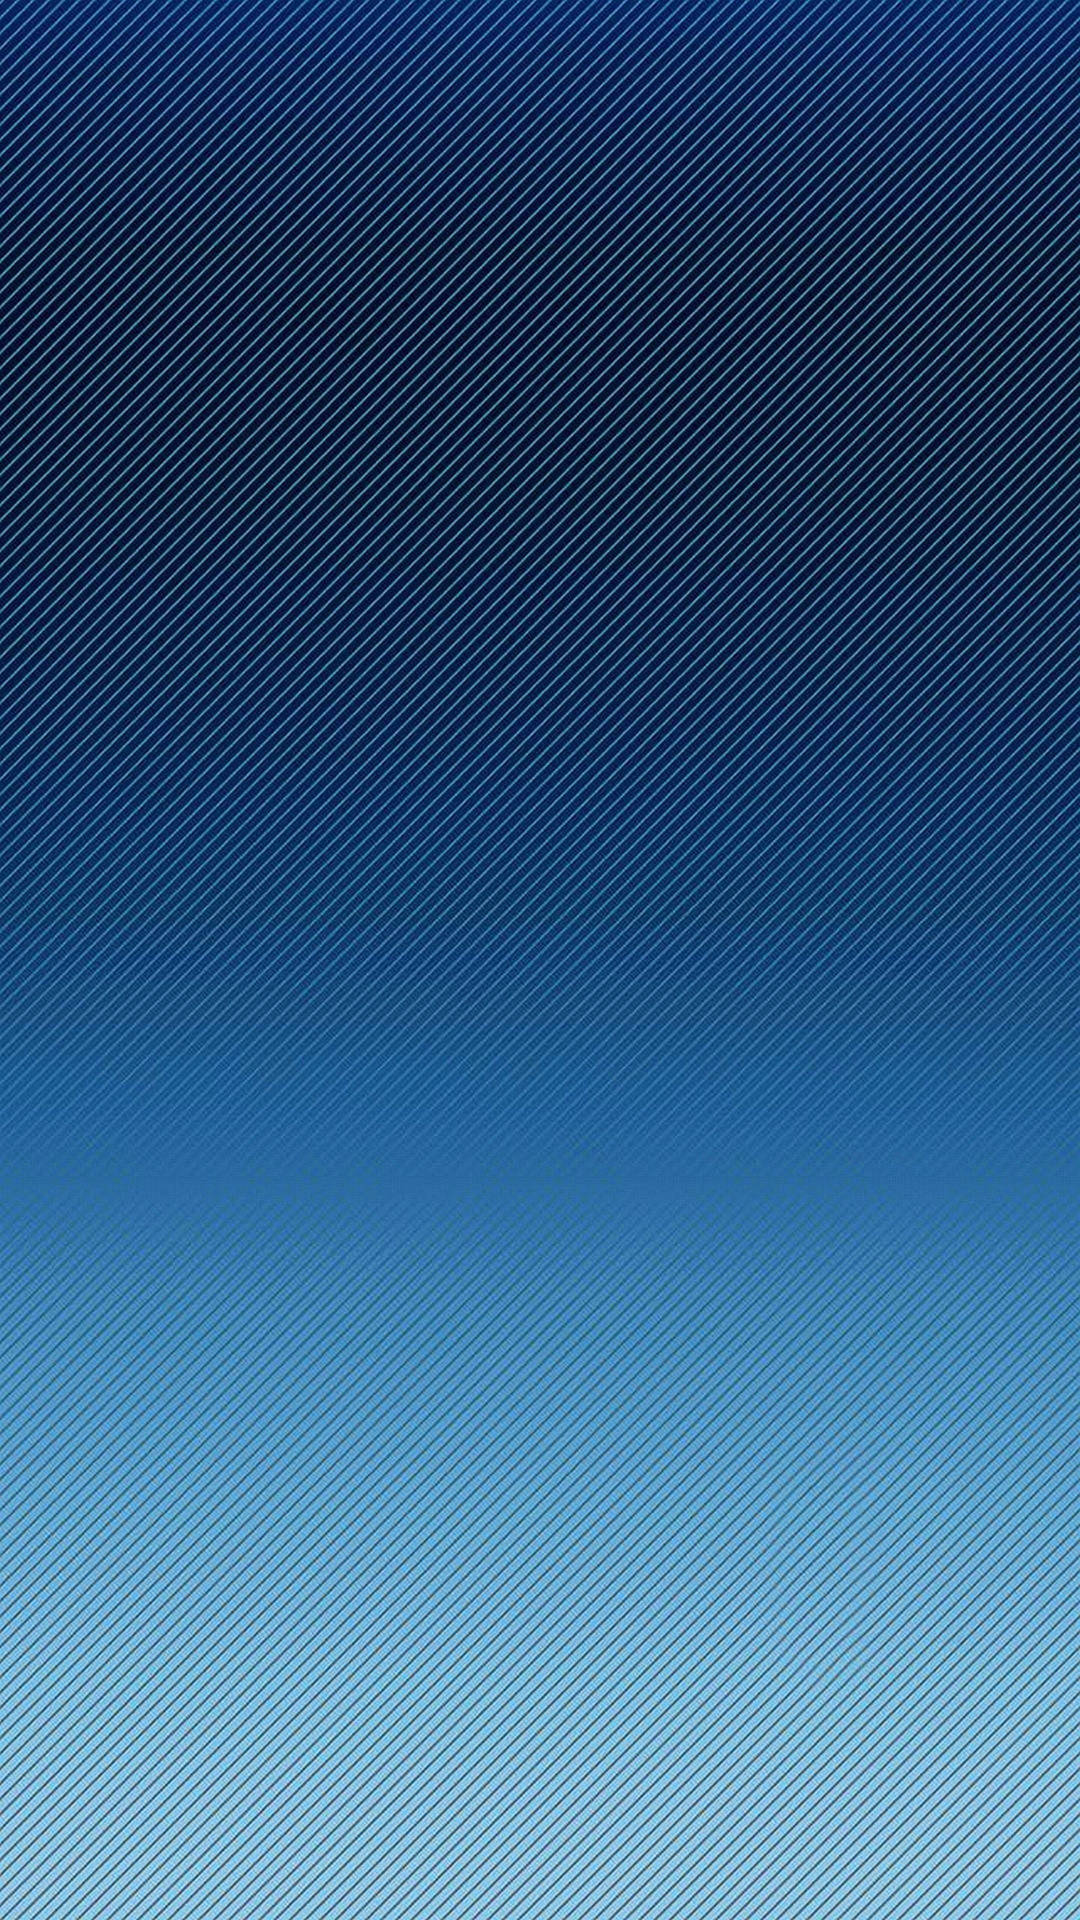 Note 8 Minimalist Gradient Blue Background